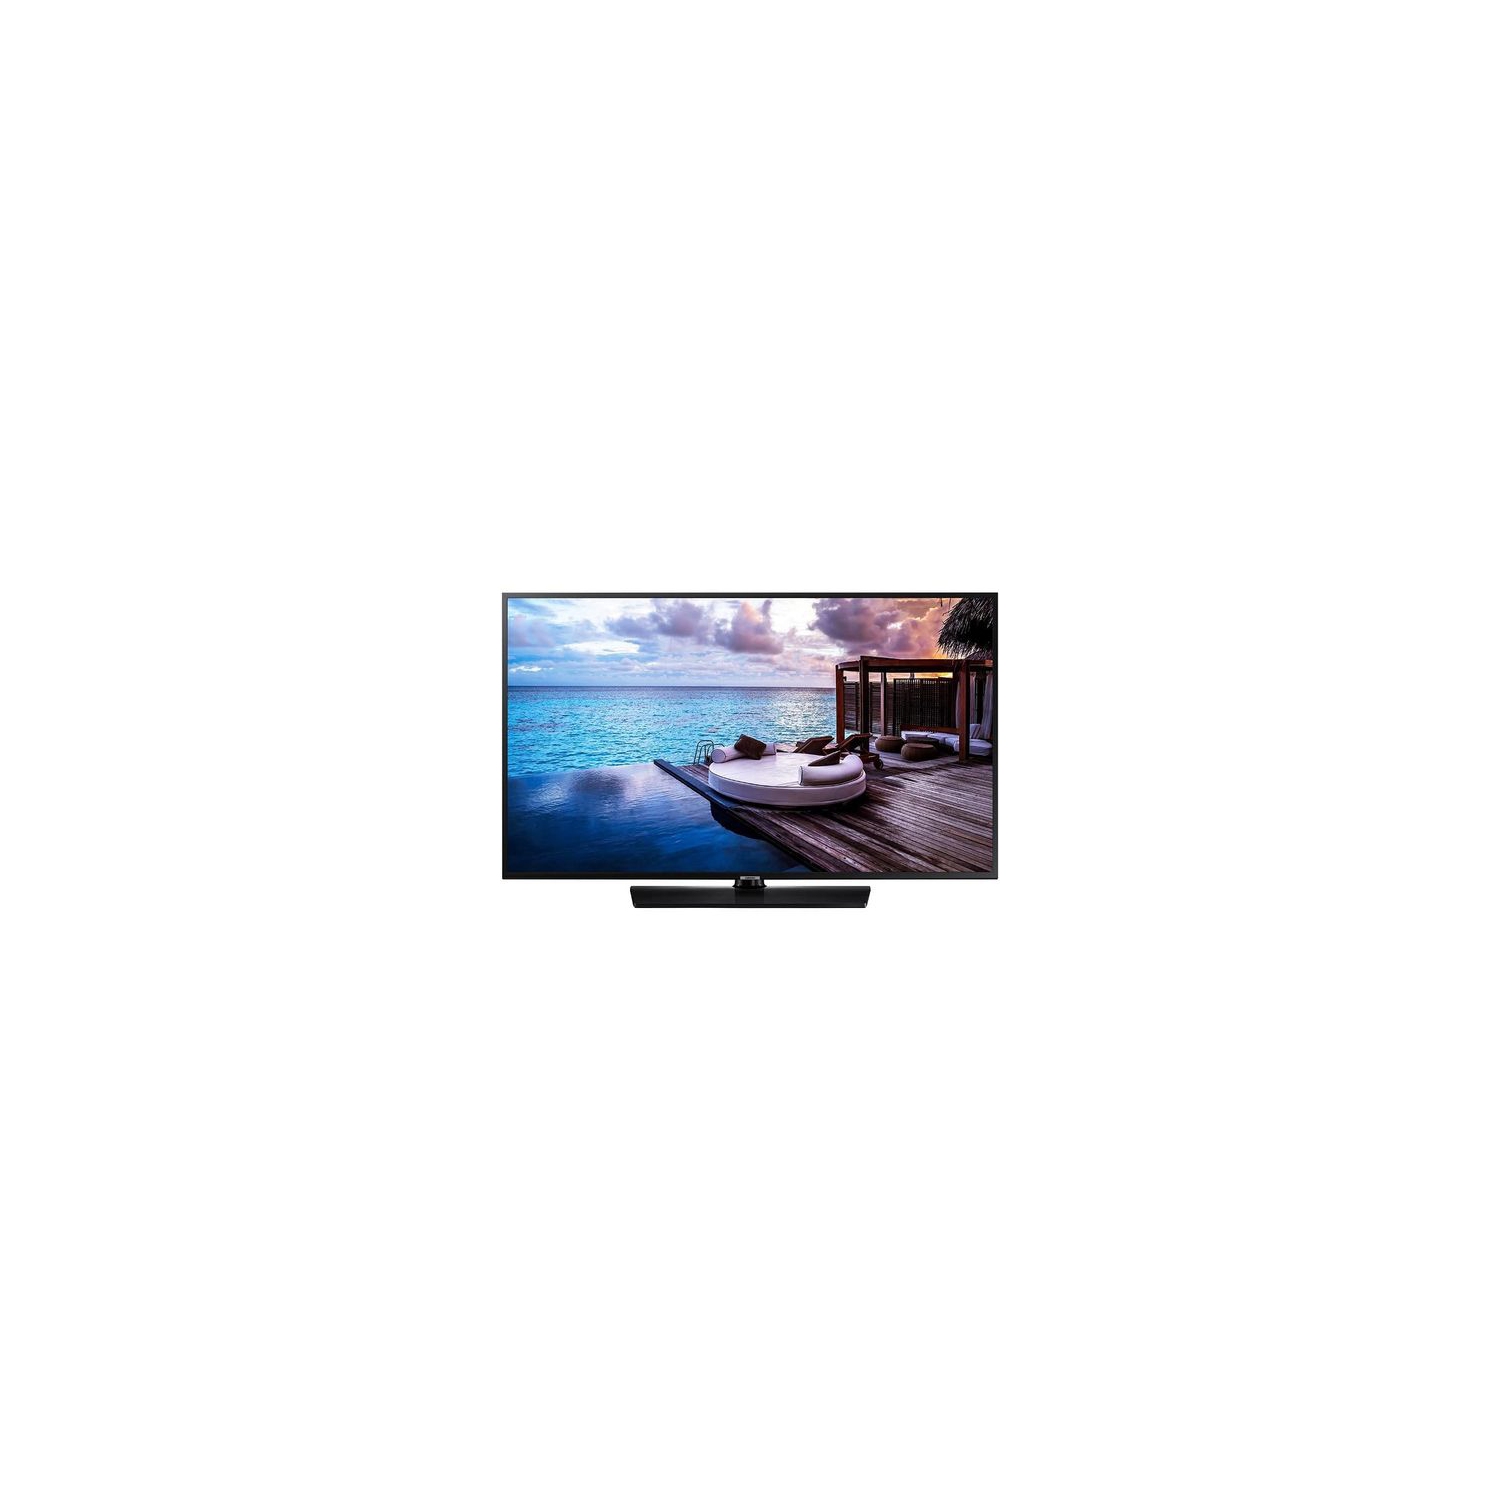 Samsung 50" 4K UHD LED Tizen Smart TV (HG50NJ690YF) - Black